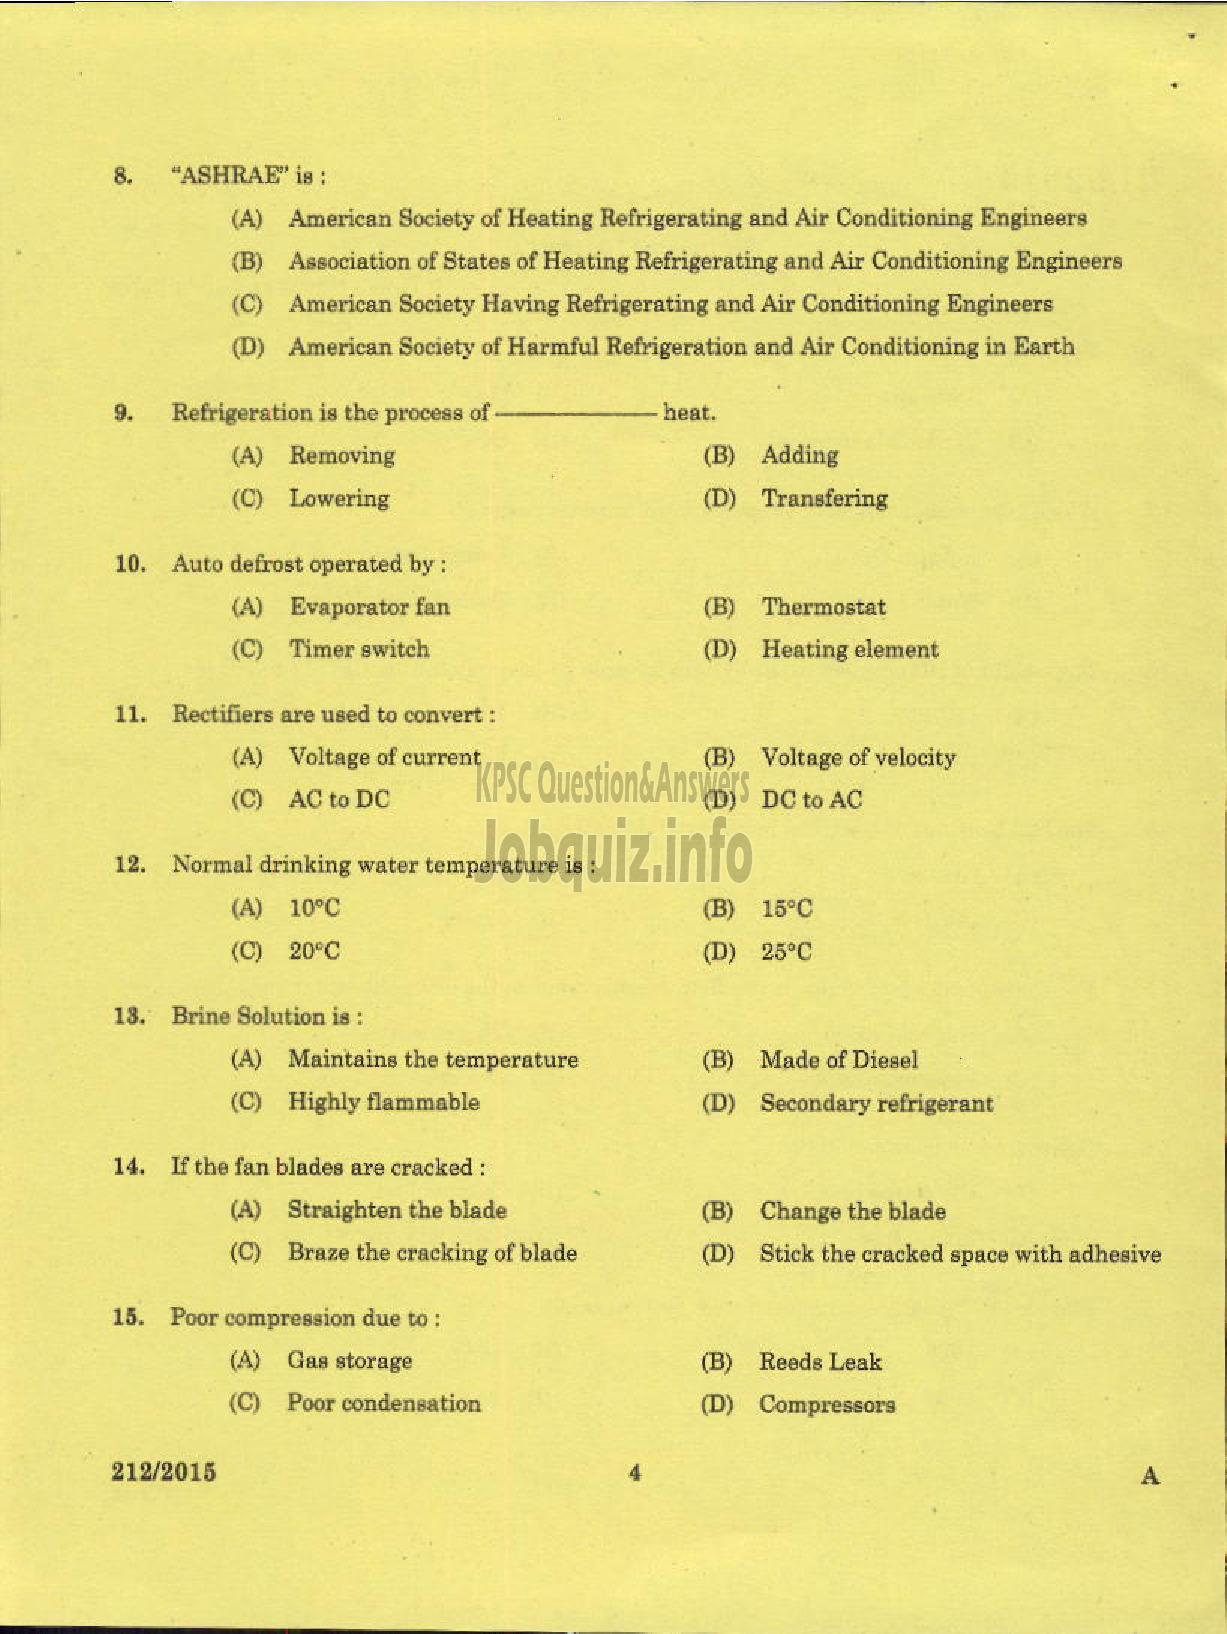 Kerala PSC Question Paper - TECHNICIAN GR II REFRIGERATION MECHANIC KCMMF LTD-2